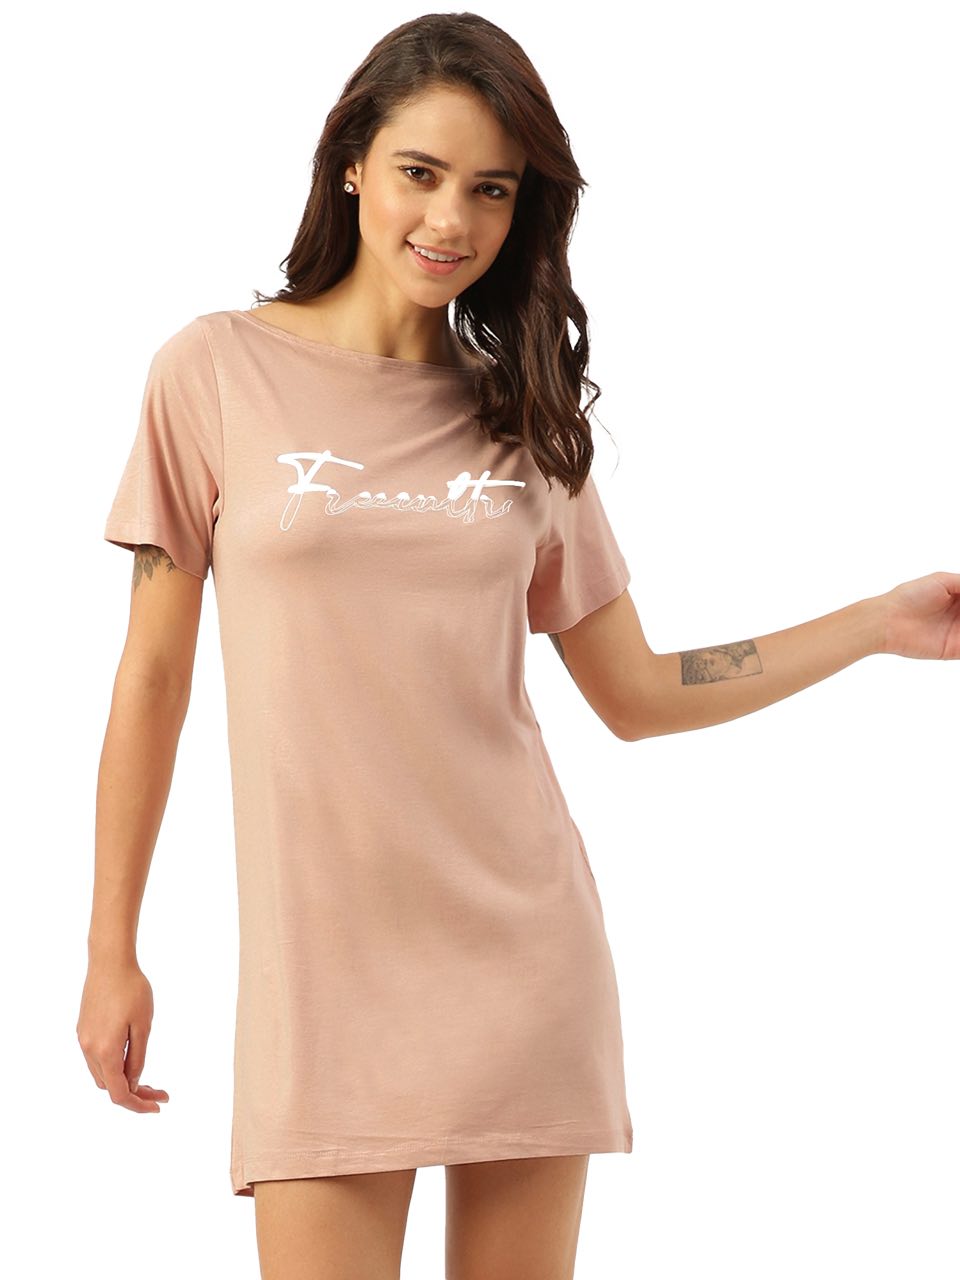 Twin Skin Women's T-shirt Dress (Pack of 1)